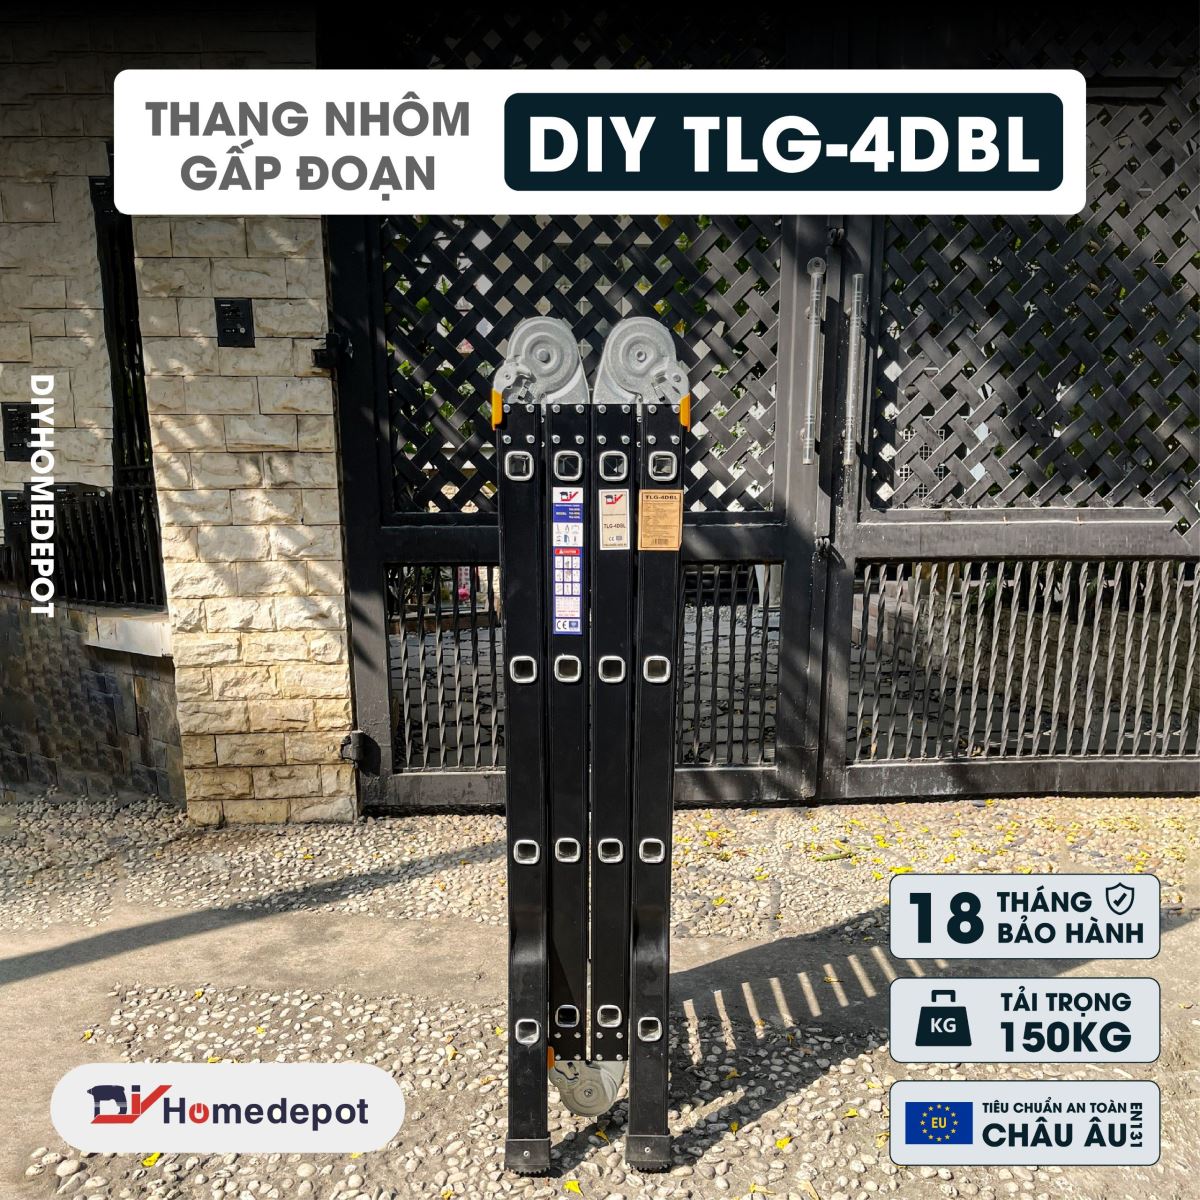 Thang nhôm gấp đoạn cao cấp chân choãi DIY TLG-4DBL chiều cao chữ A 2.3M chữ I 4.7M